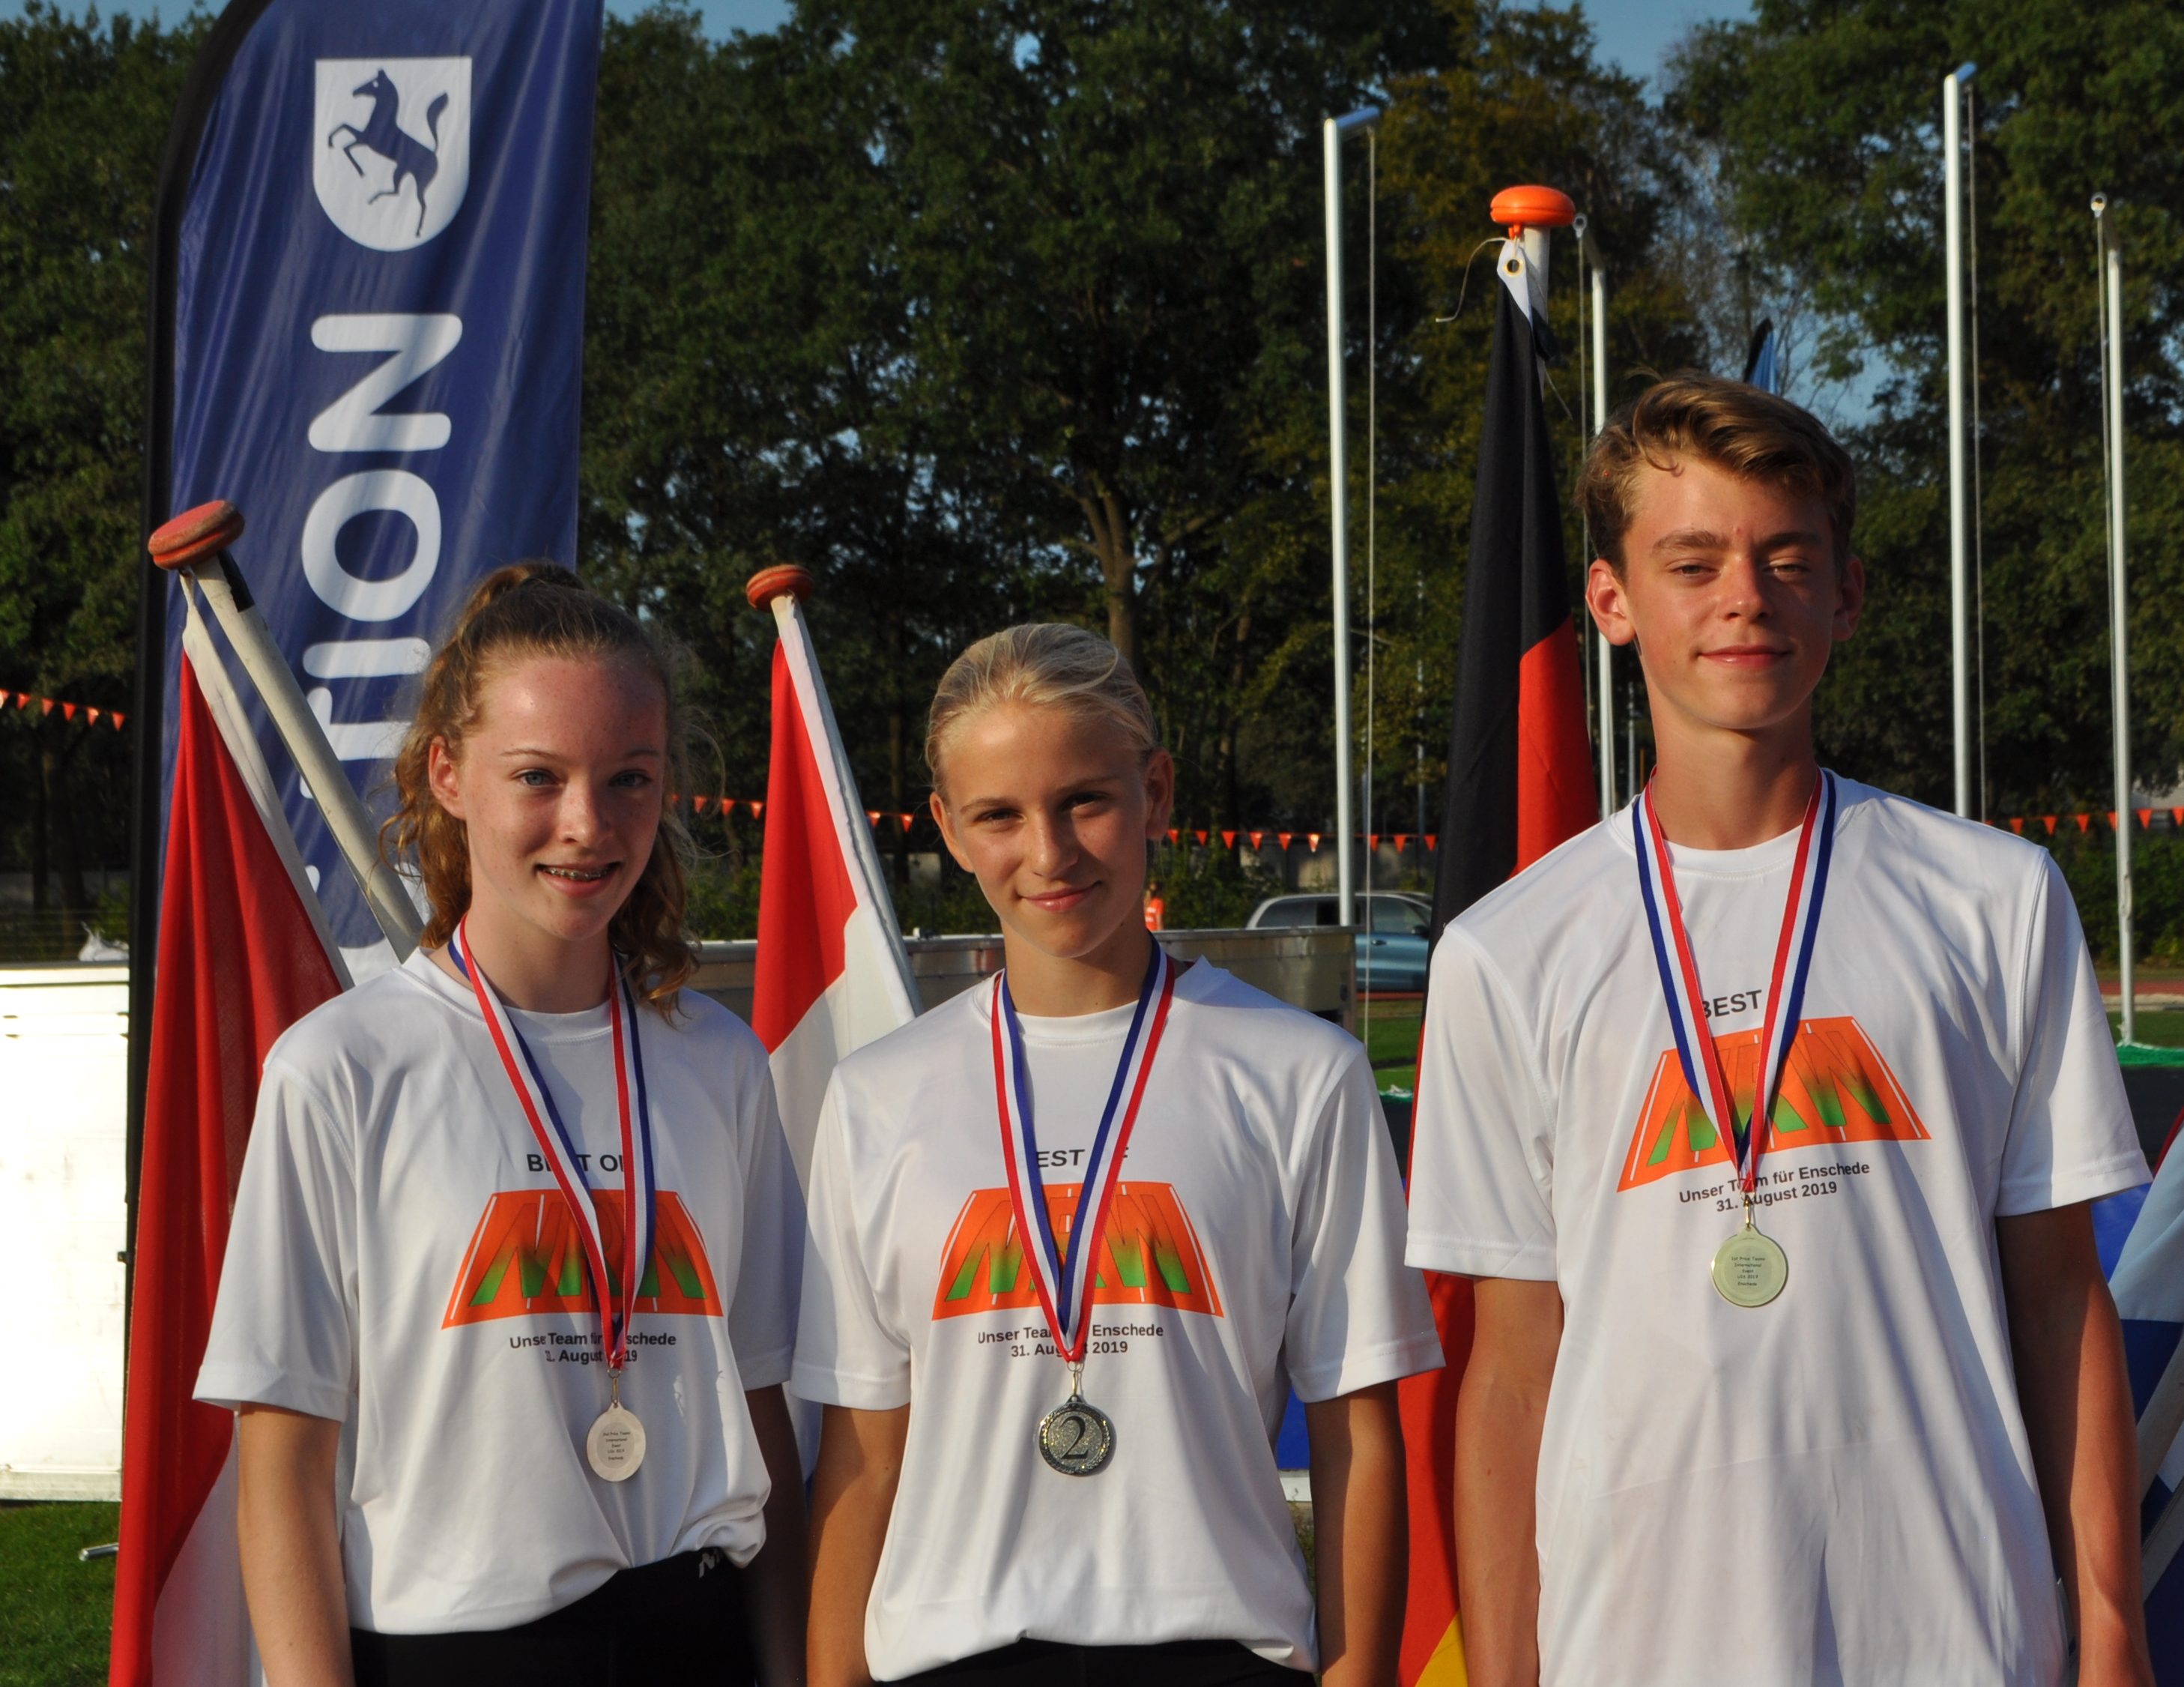 LG-Athleten beim Ländervergleichskampf NRW-Niederlande